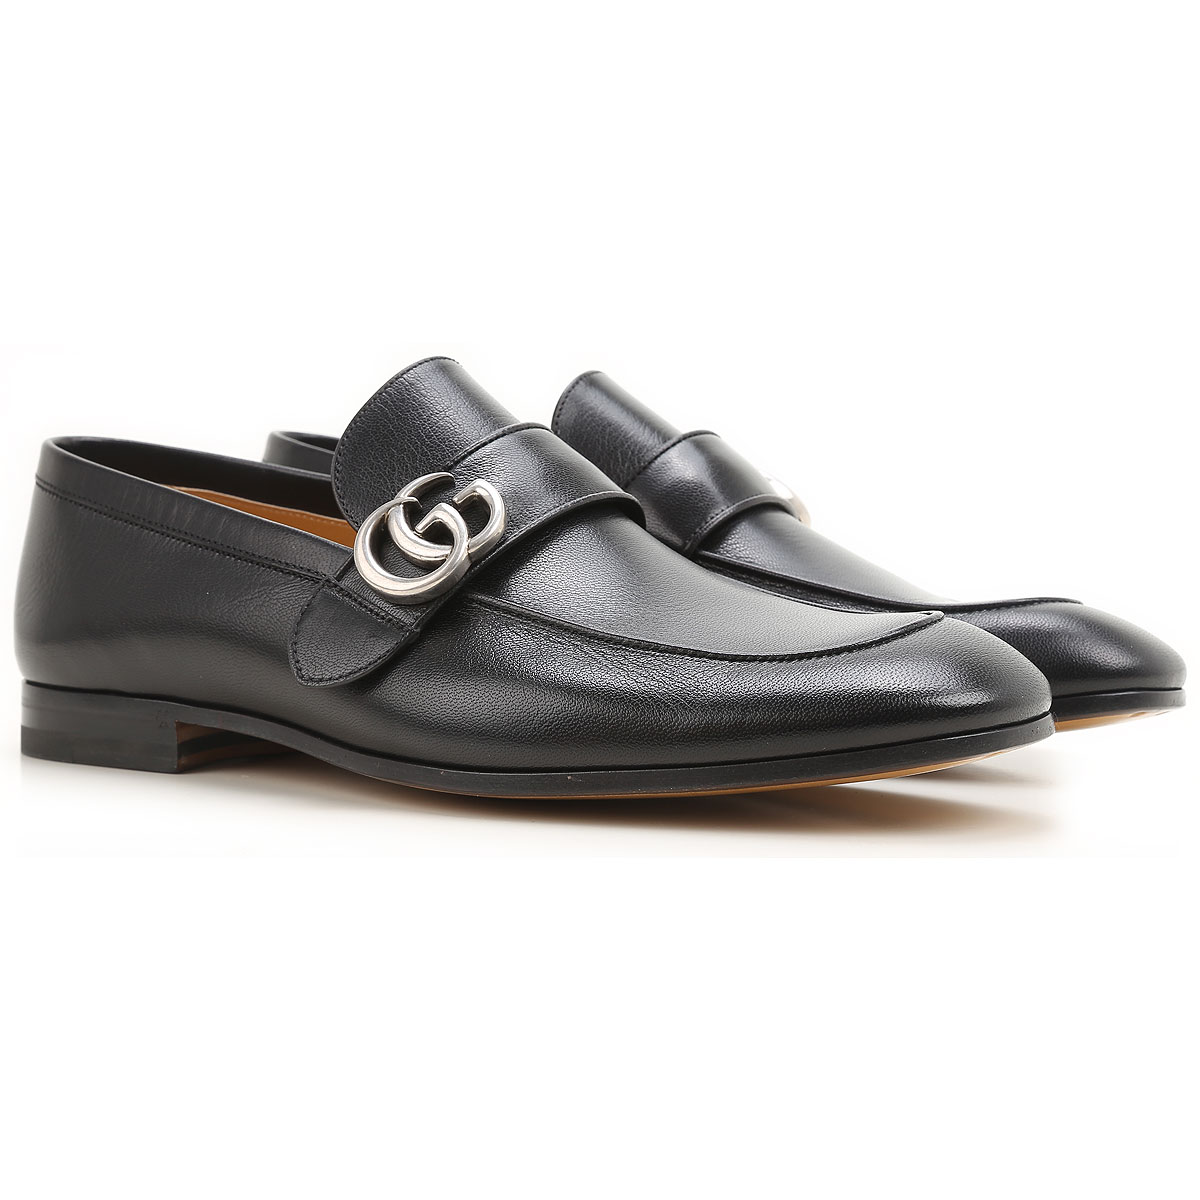 Zapatos de Hombres Gucci, Detalle Modelo: 450853-d3v00-1000